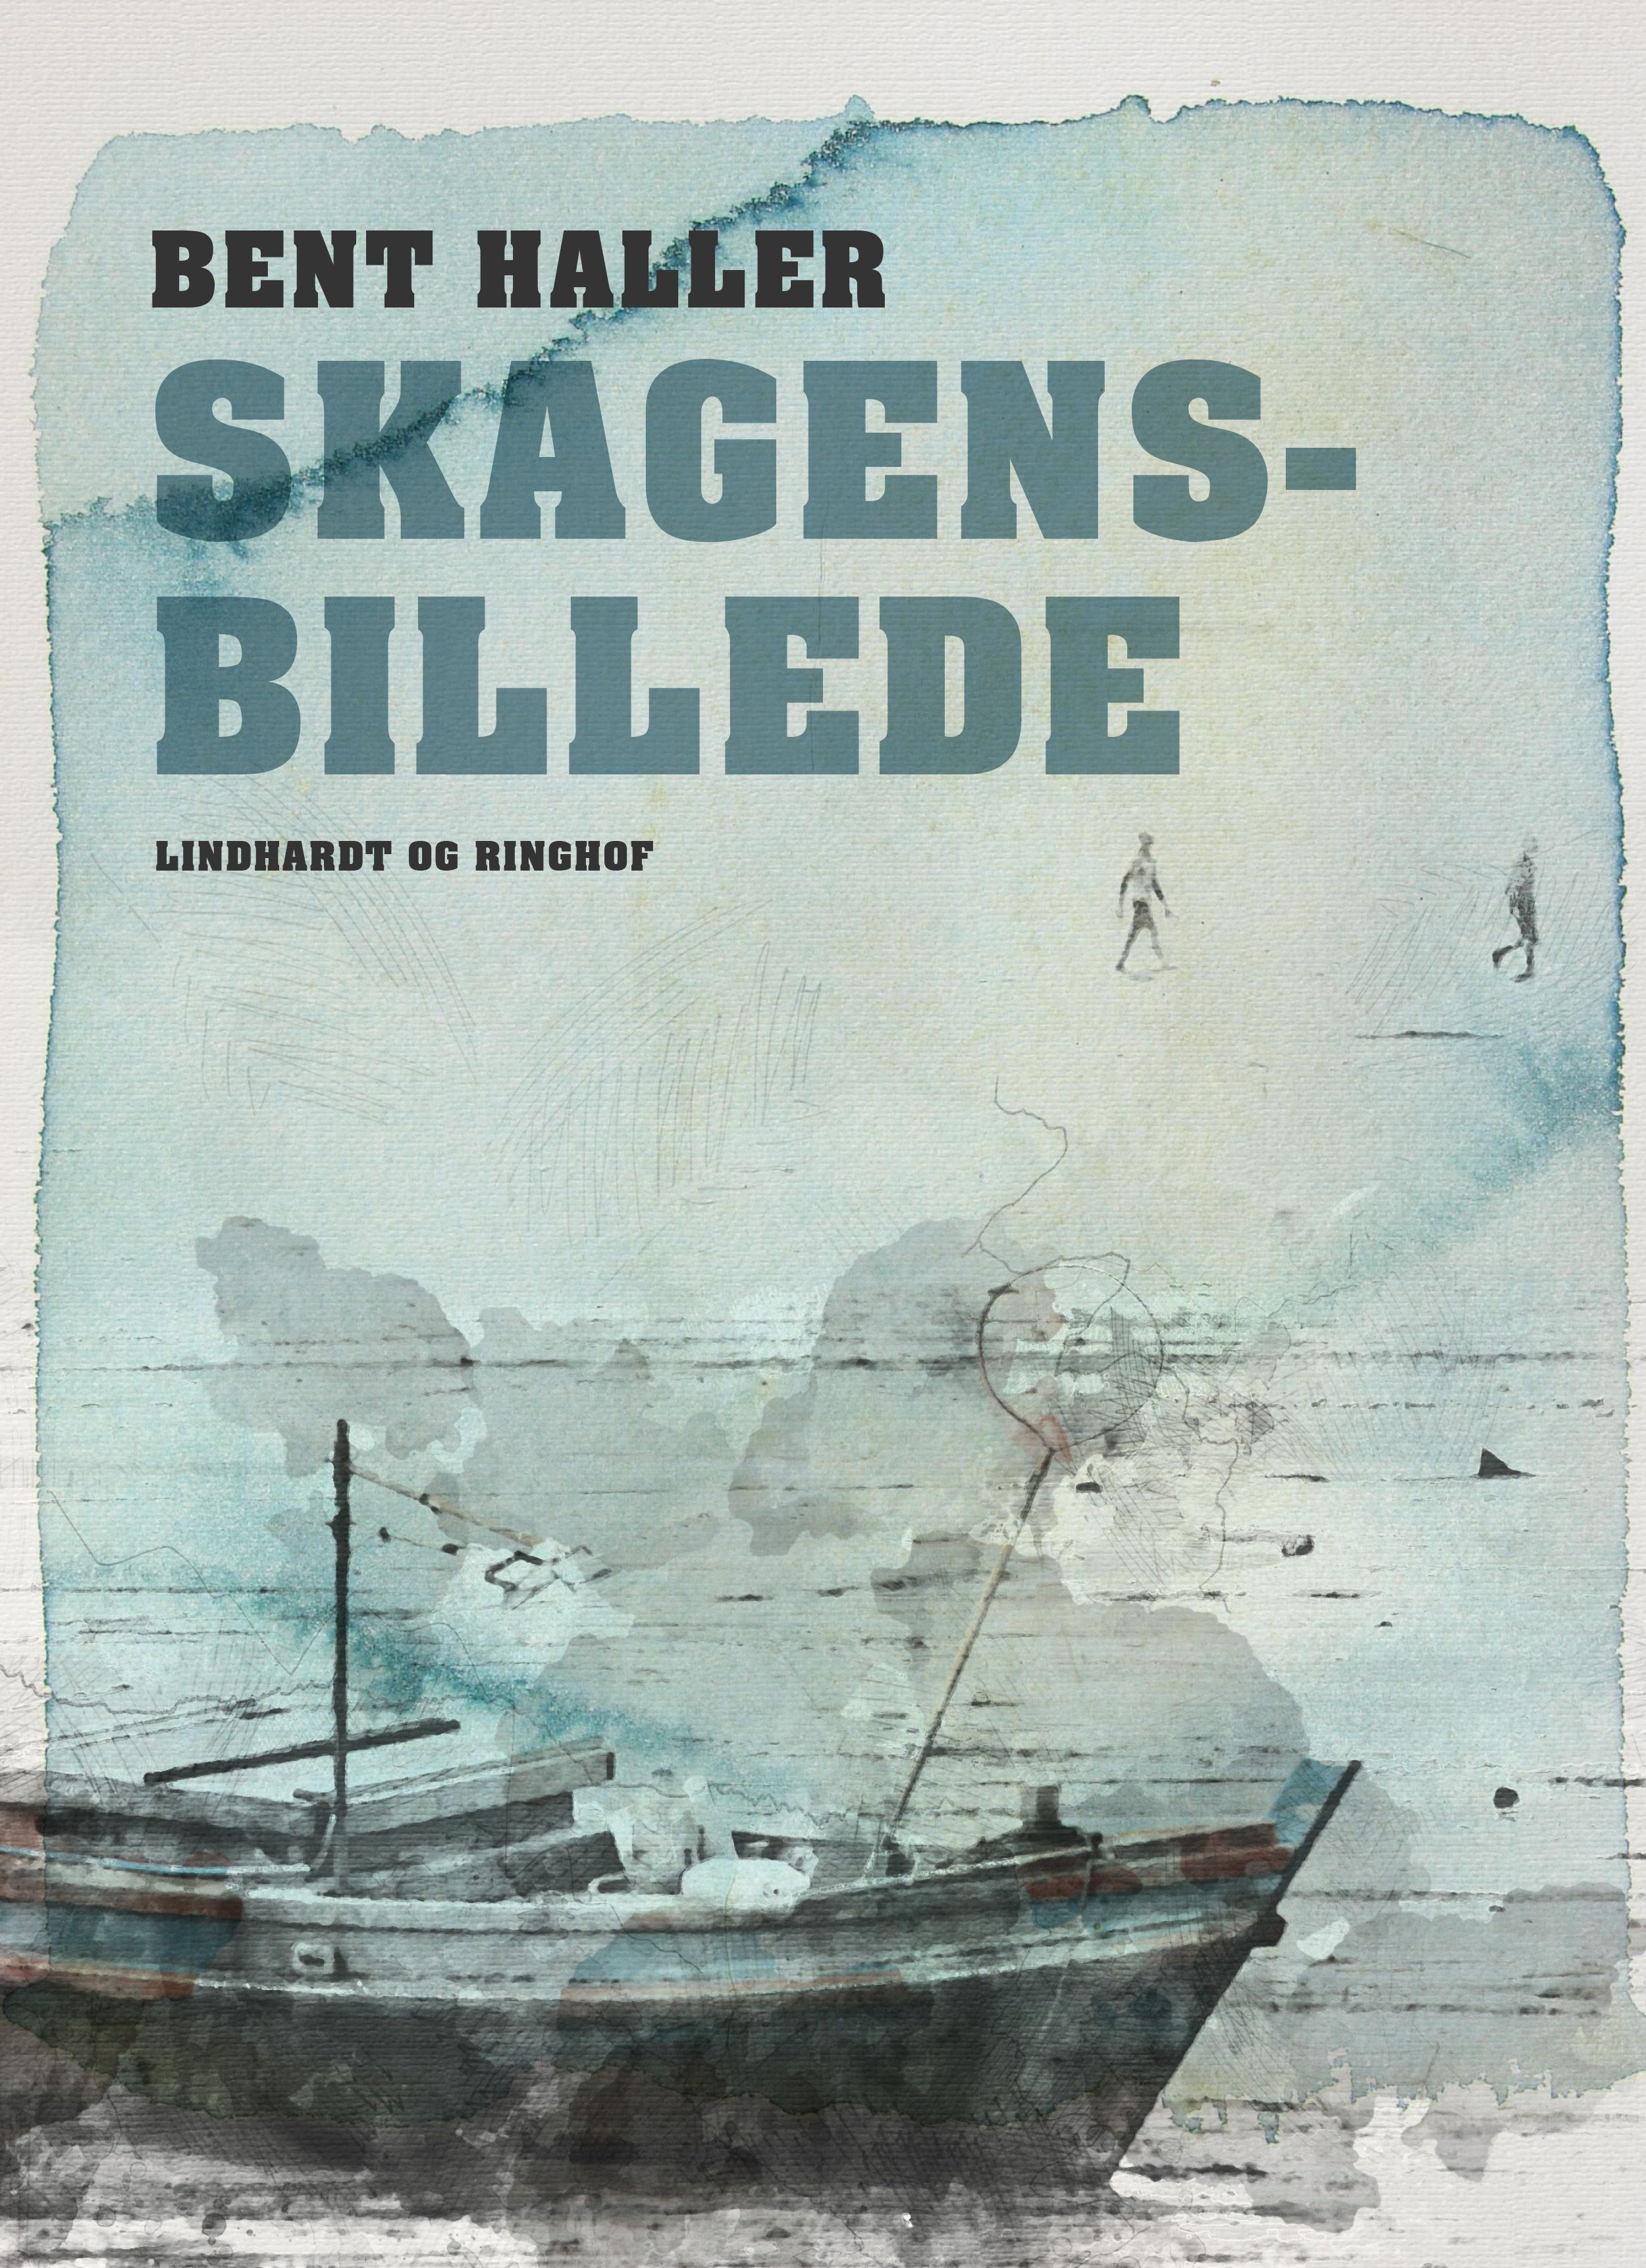 Skagensbillede, e-bok av Bent Haller